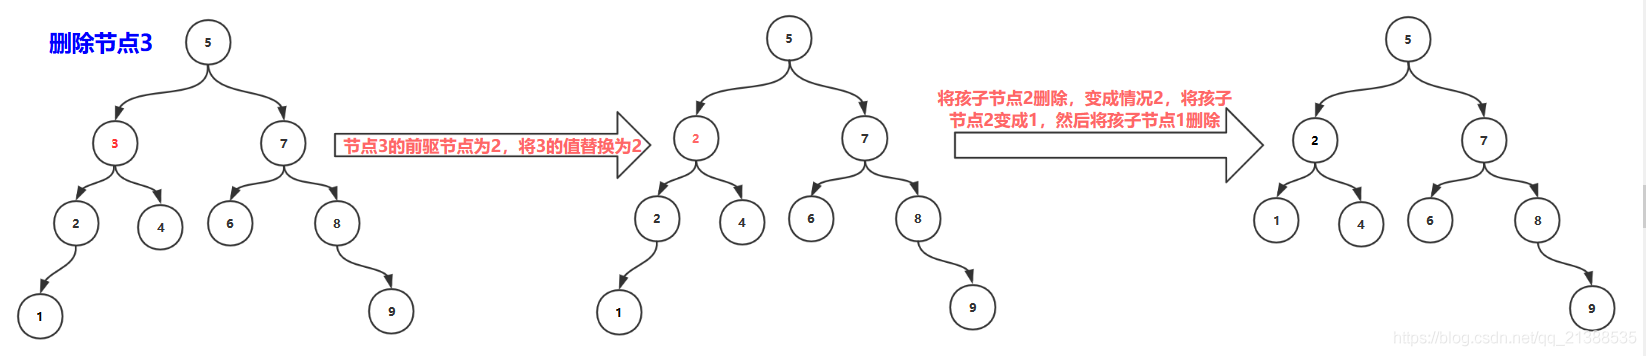 AVL树 - 图19